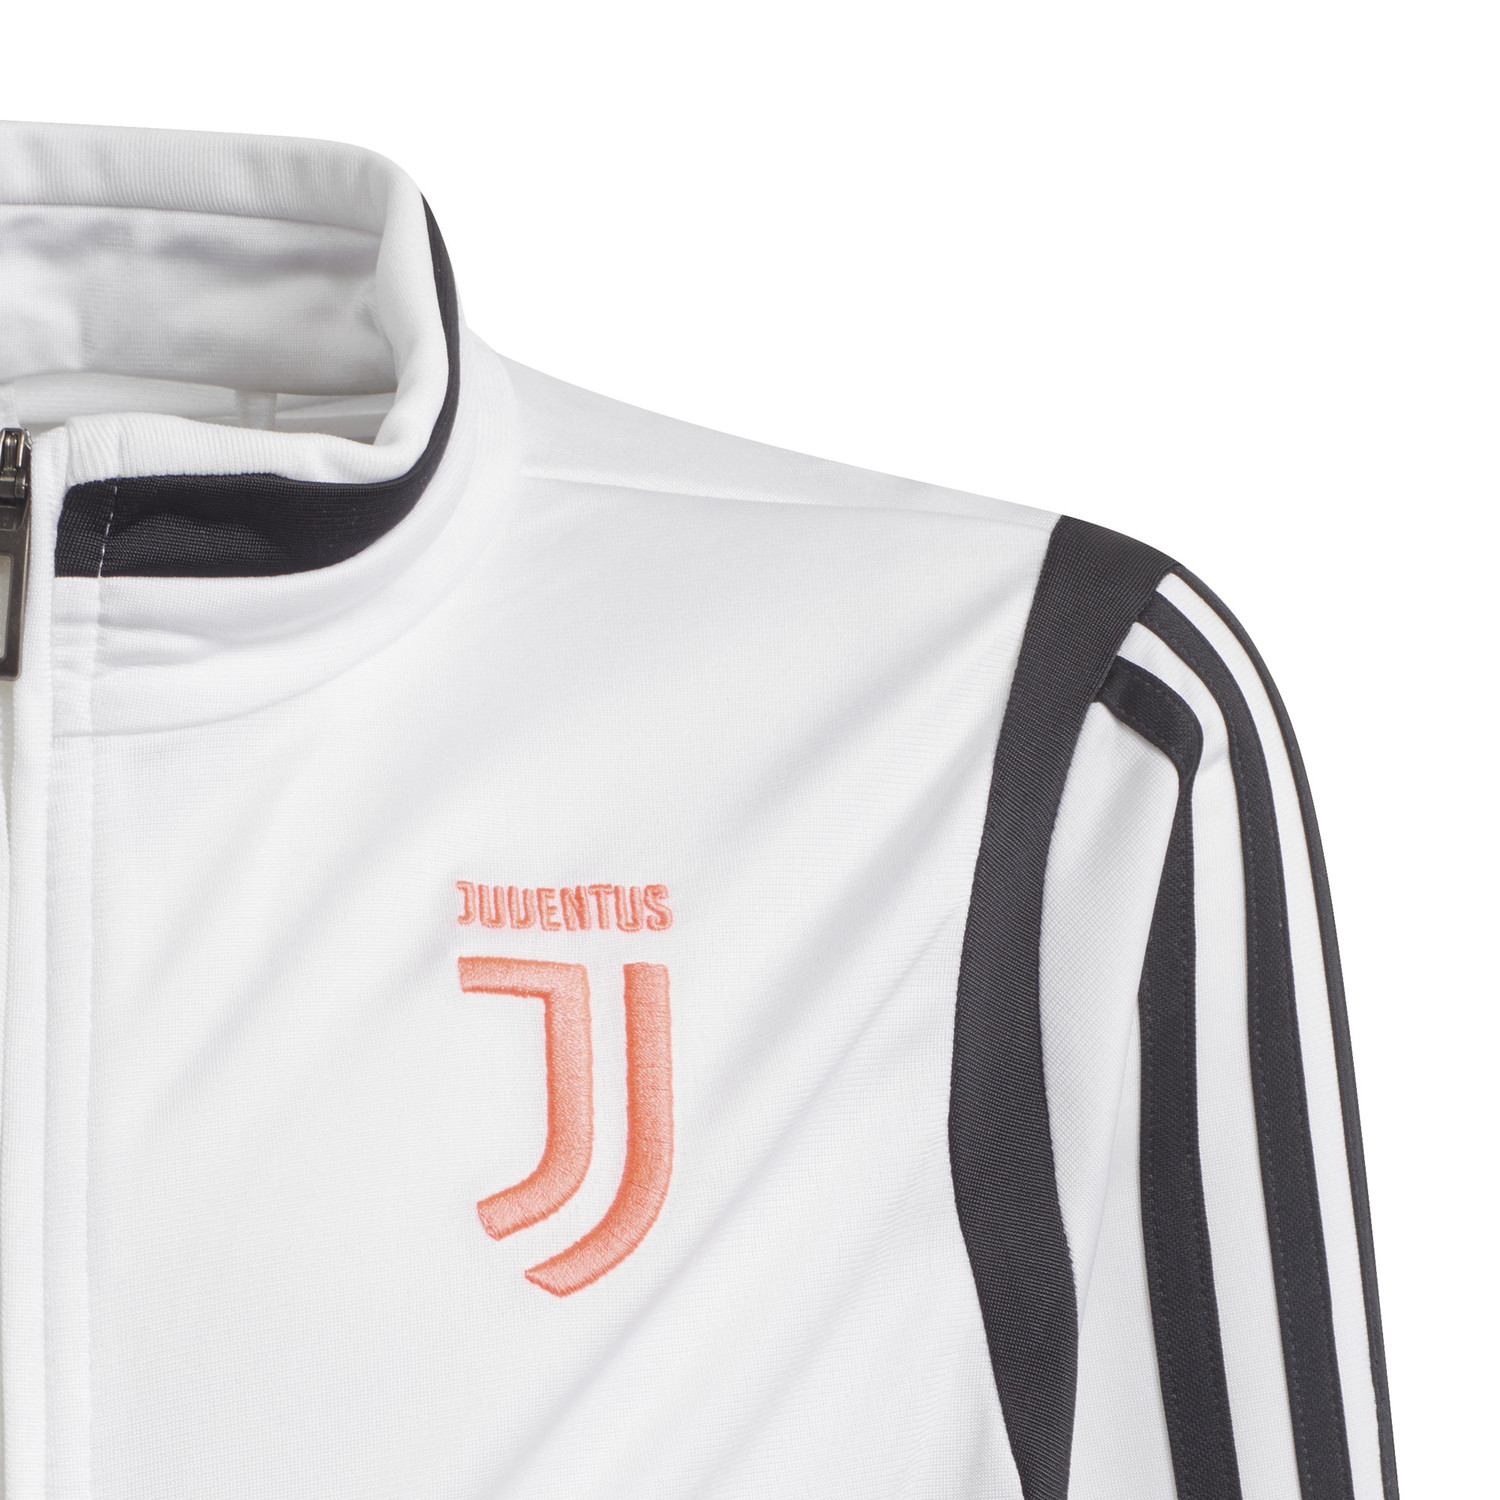 Ensemble survêtement junior Juventus blanc noir 2019/20 sur Foot.fr